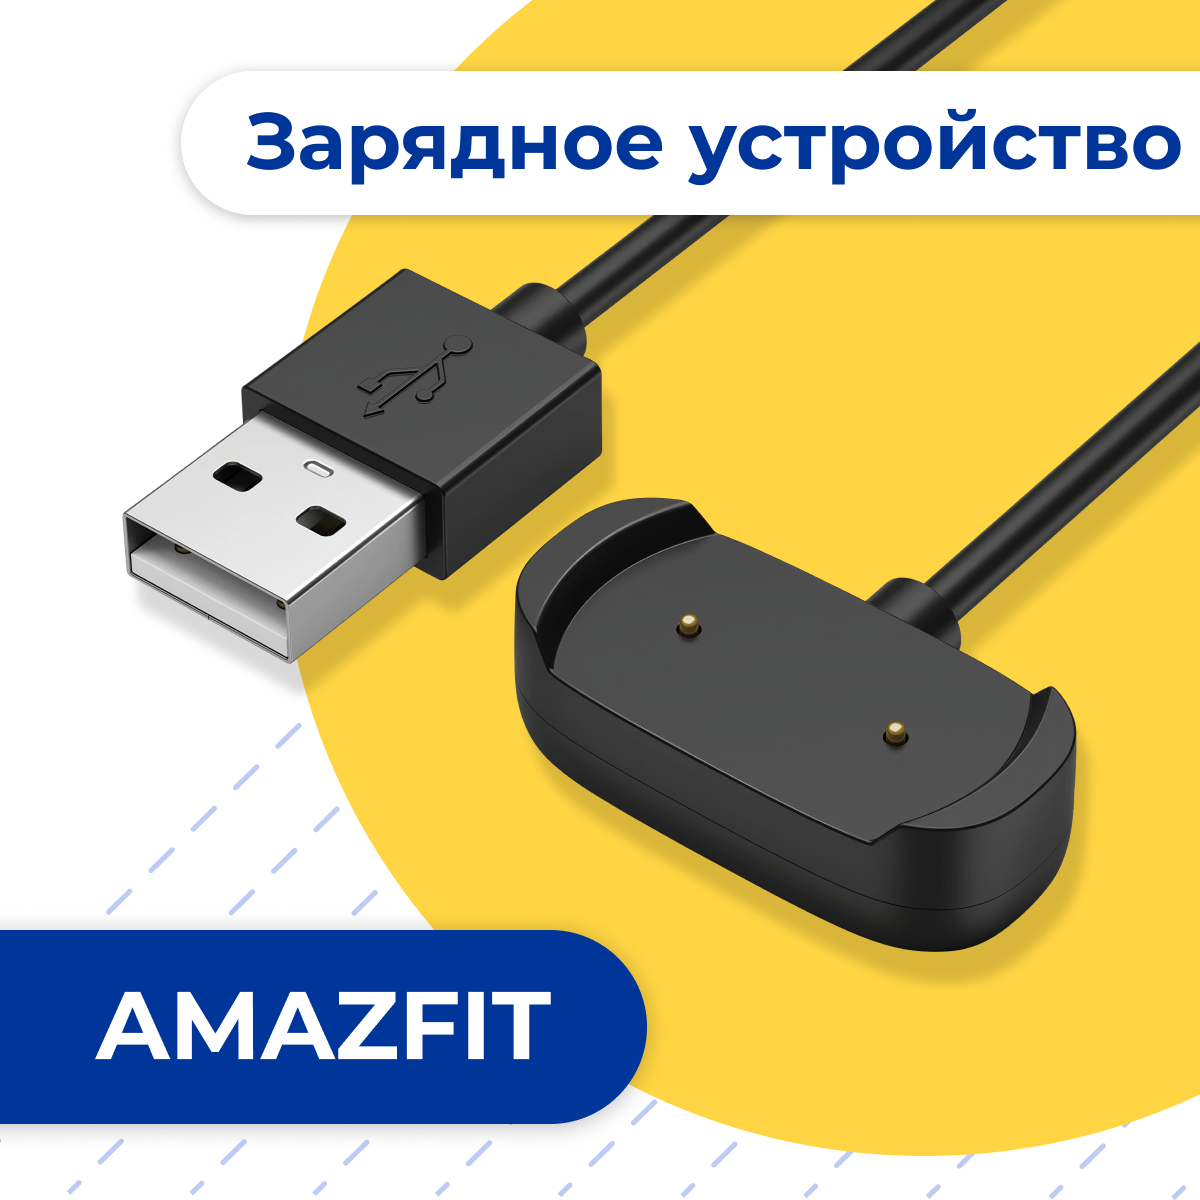 Зарядное устройство для умных смарт часов Amazfit GTR 2 и Amazfit GTS 2 / Быстрая зарядка на Амазфит ГТР 2 и Амазфит ГТС 2 / USB кабель